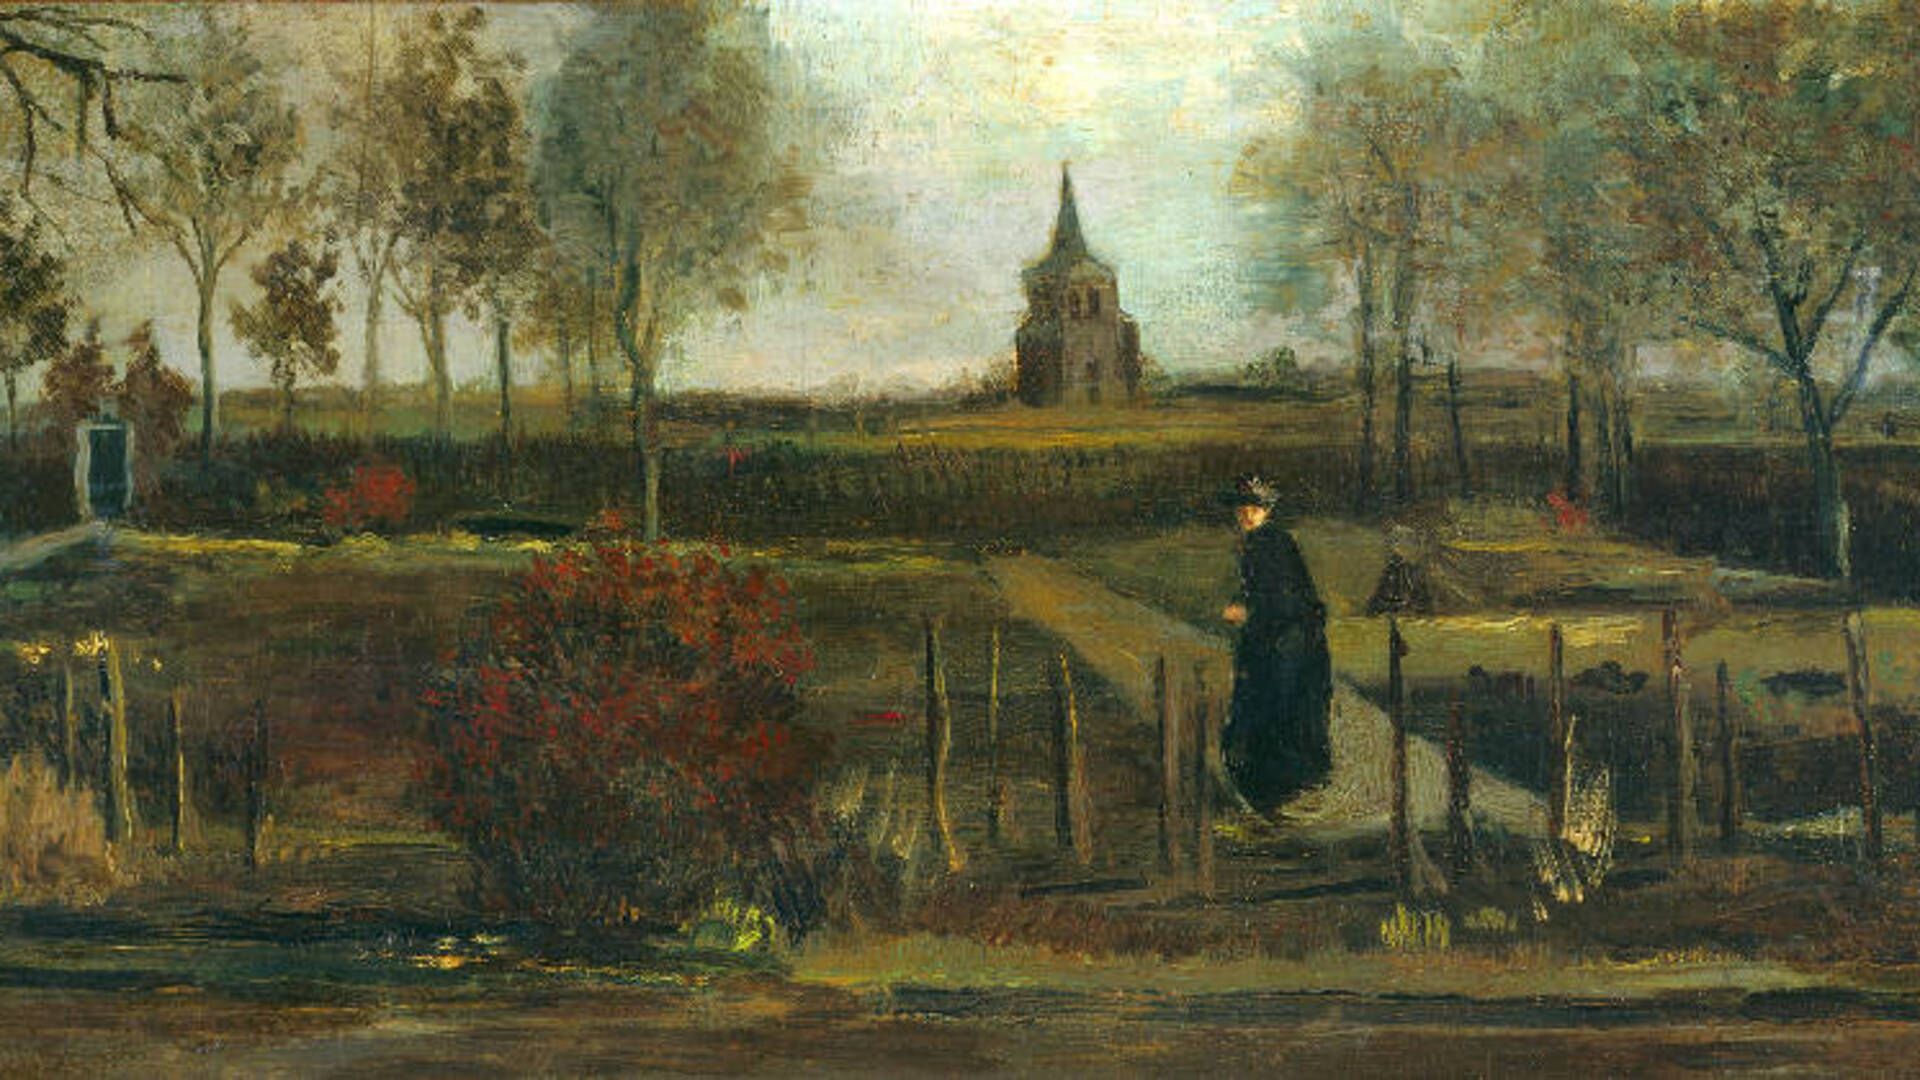 room Uitwisseling Regulatie Schilderij van Vincent van Gogh gestolen uit museum in Nederland | VRT NWS:  nieuws